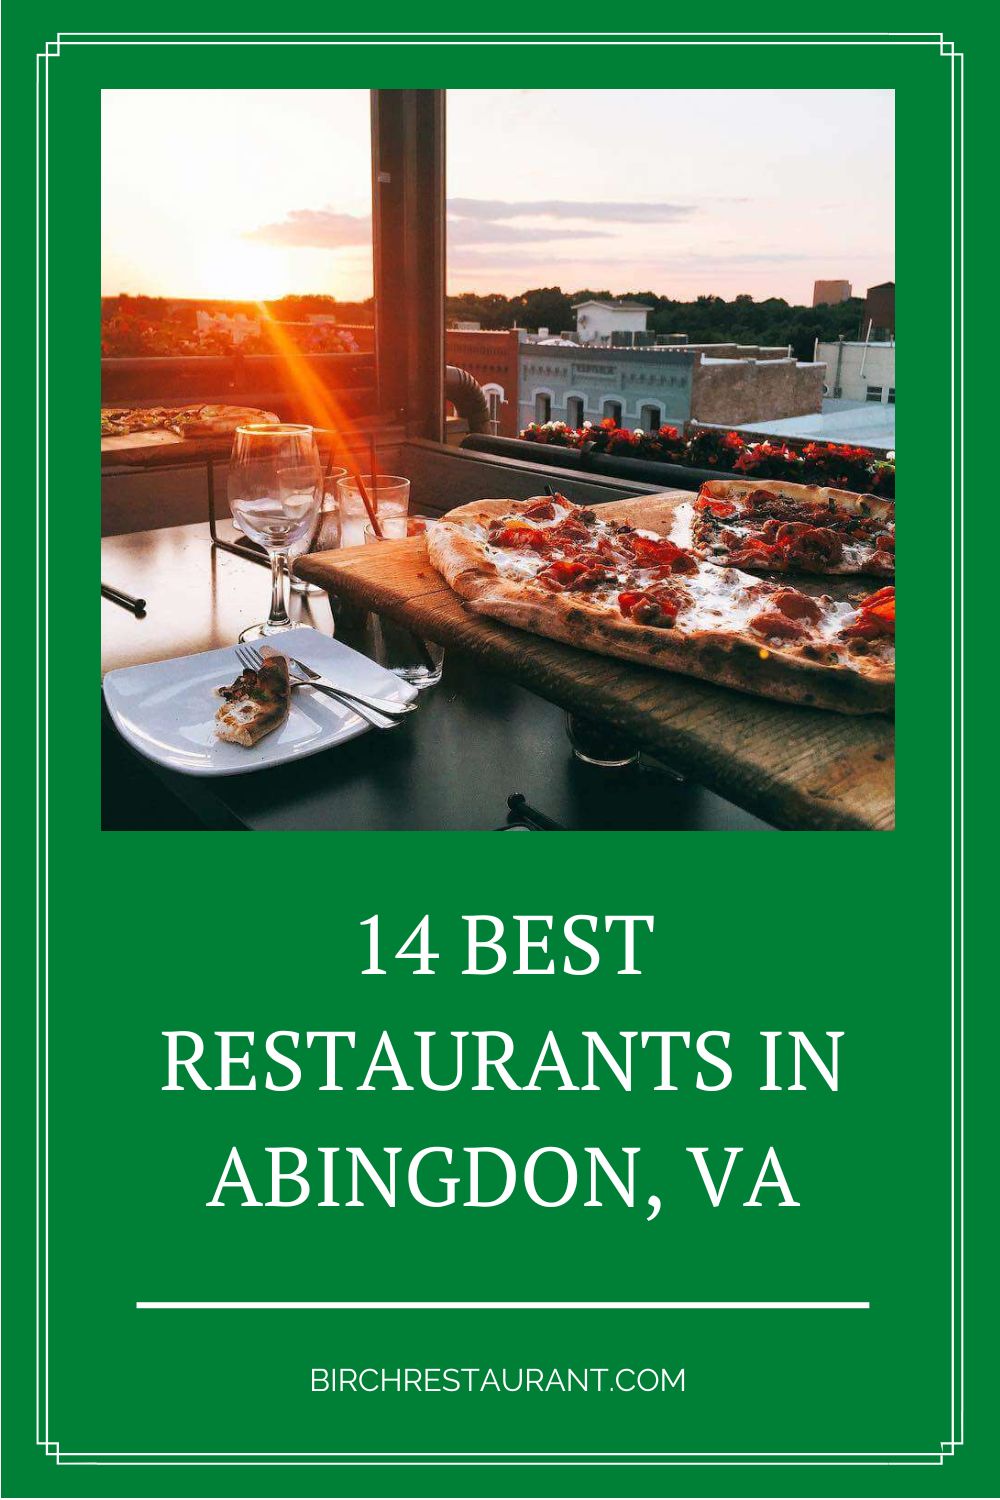 Best Restaurants in Abingdon